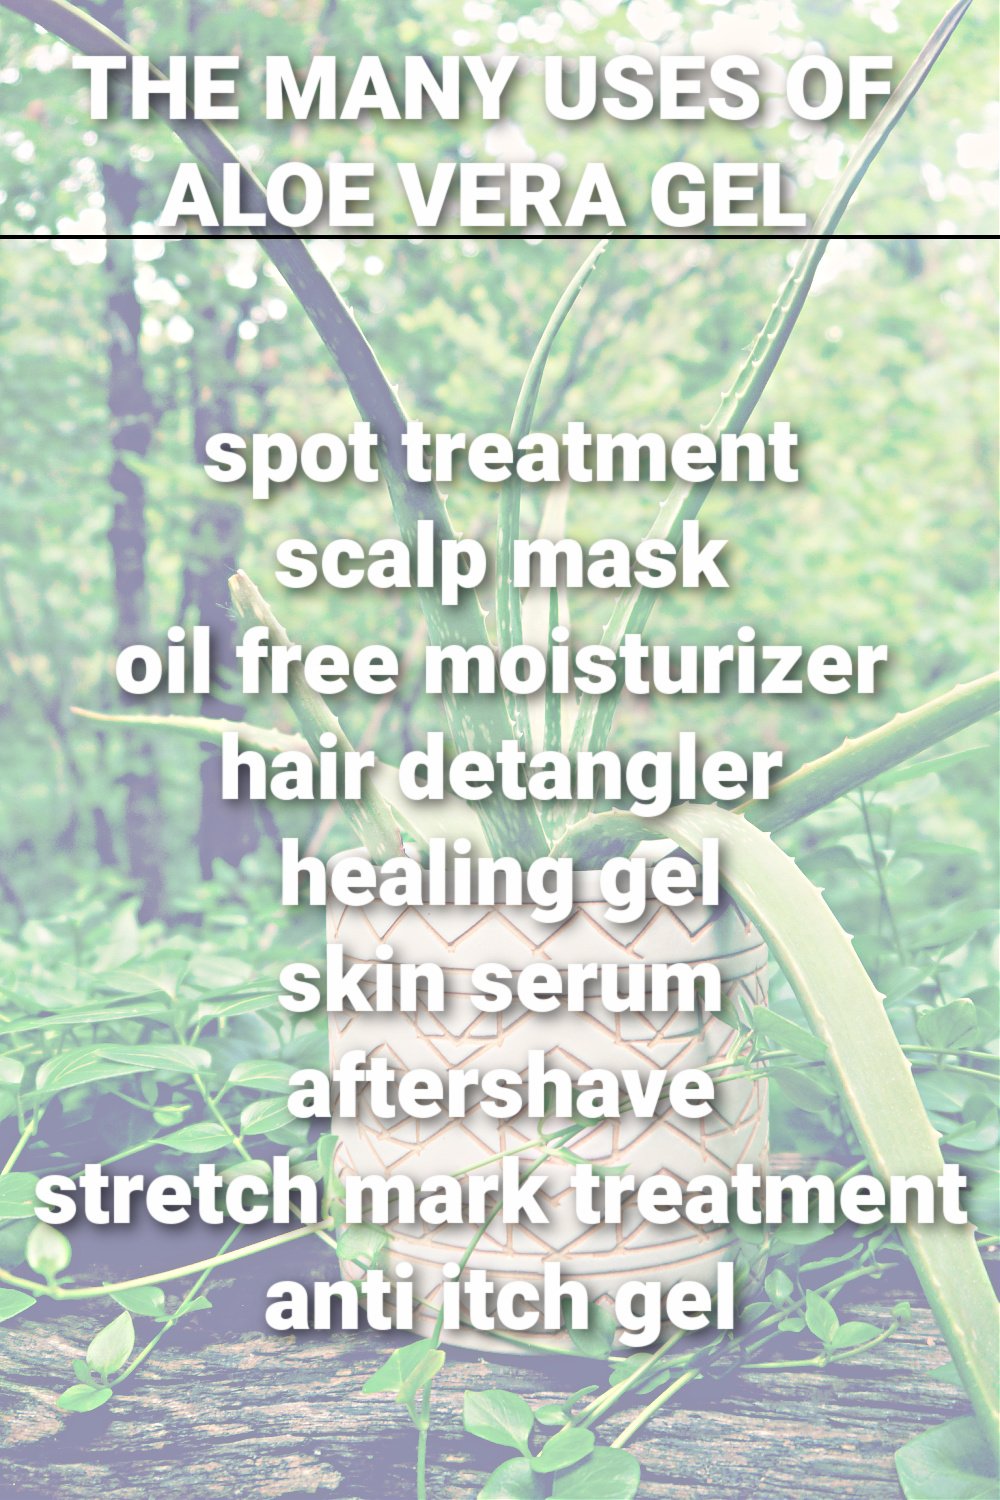 Aloe Vera Skin Benefits and Uses